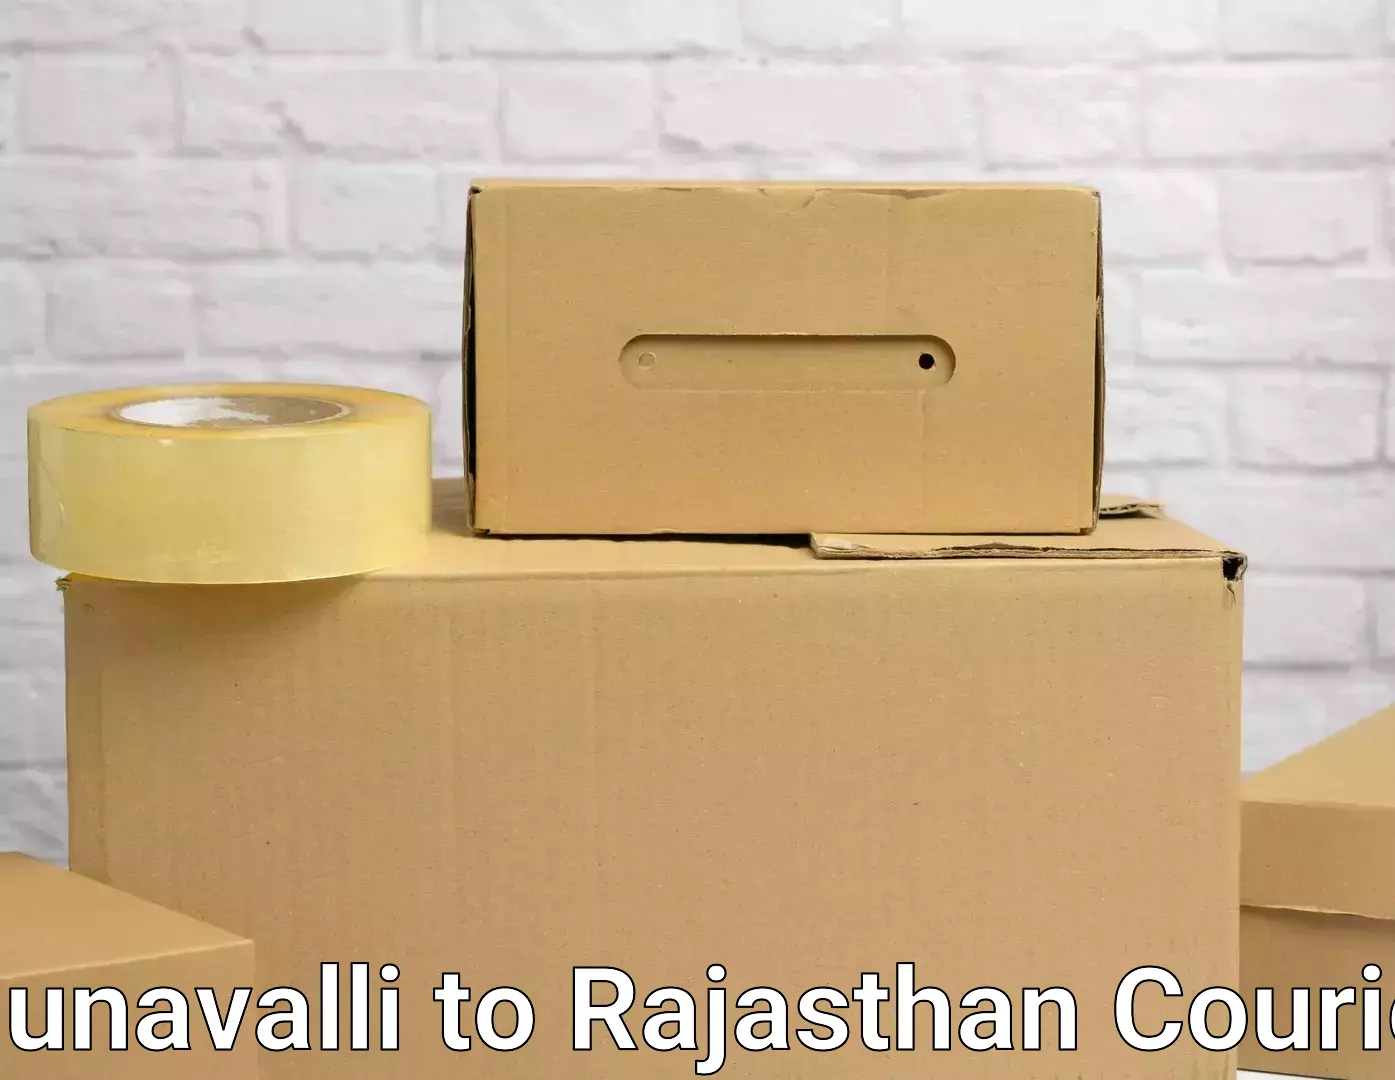 Furniture moving experts Munavalli to Pilani